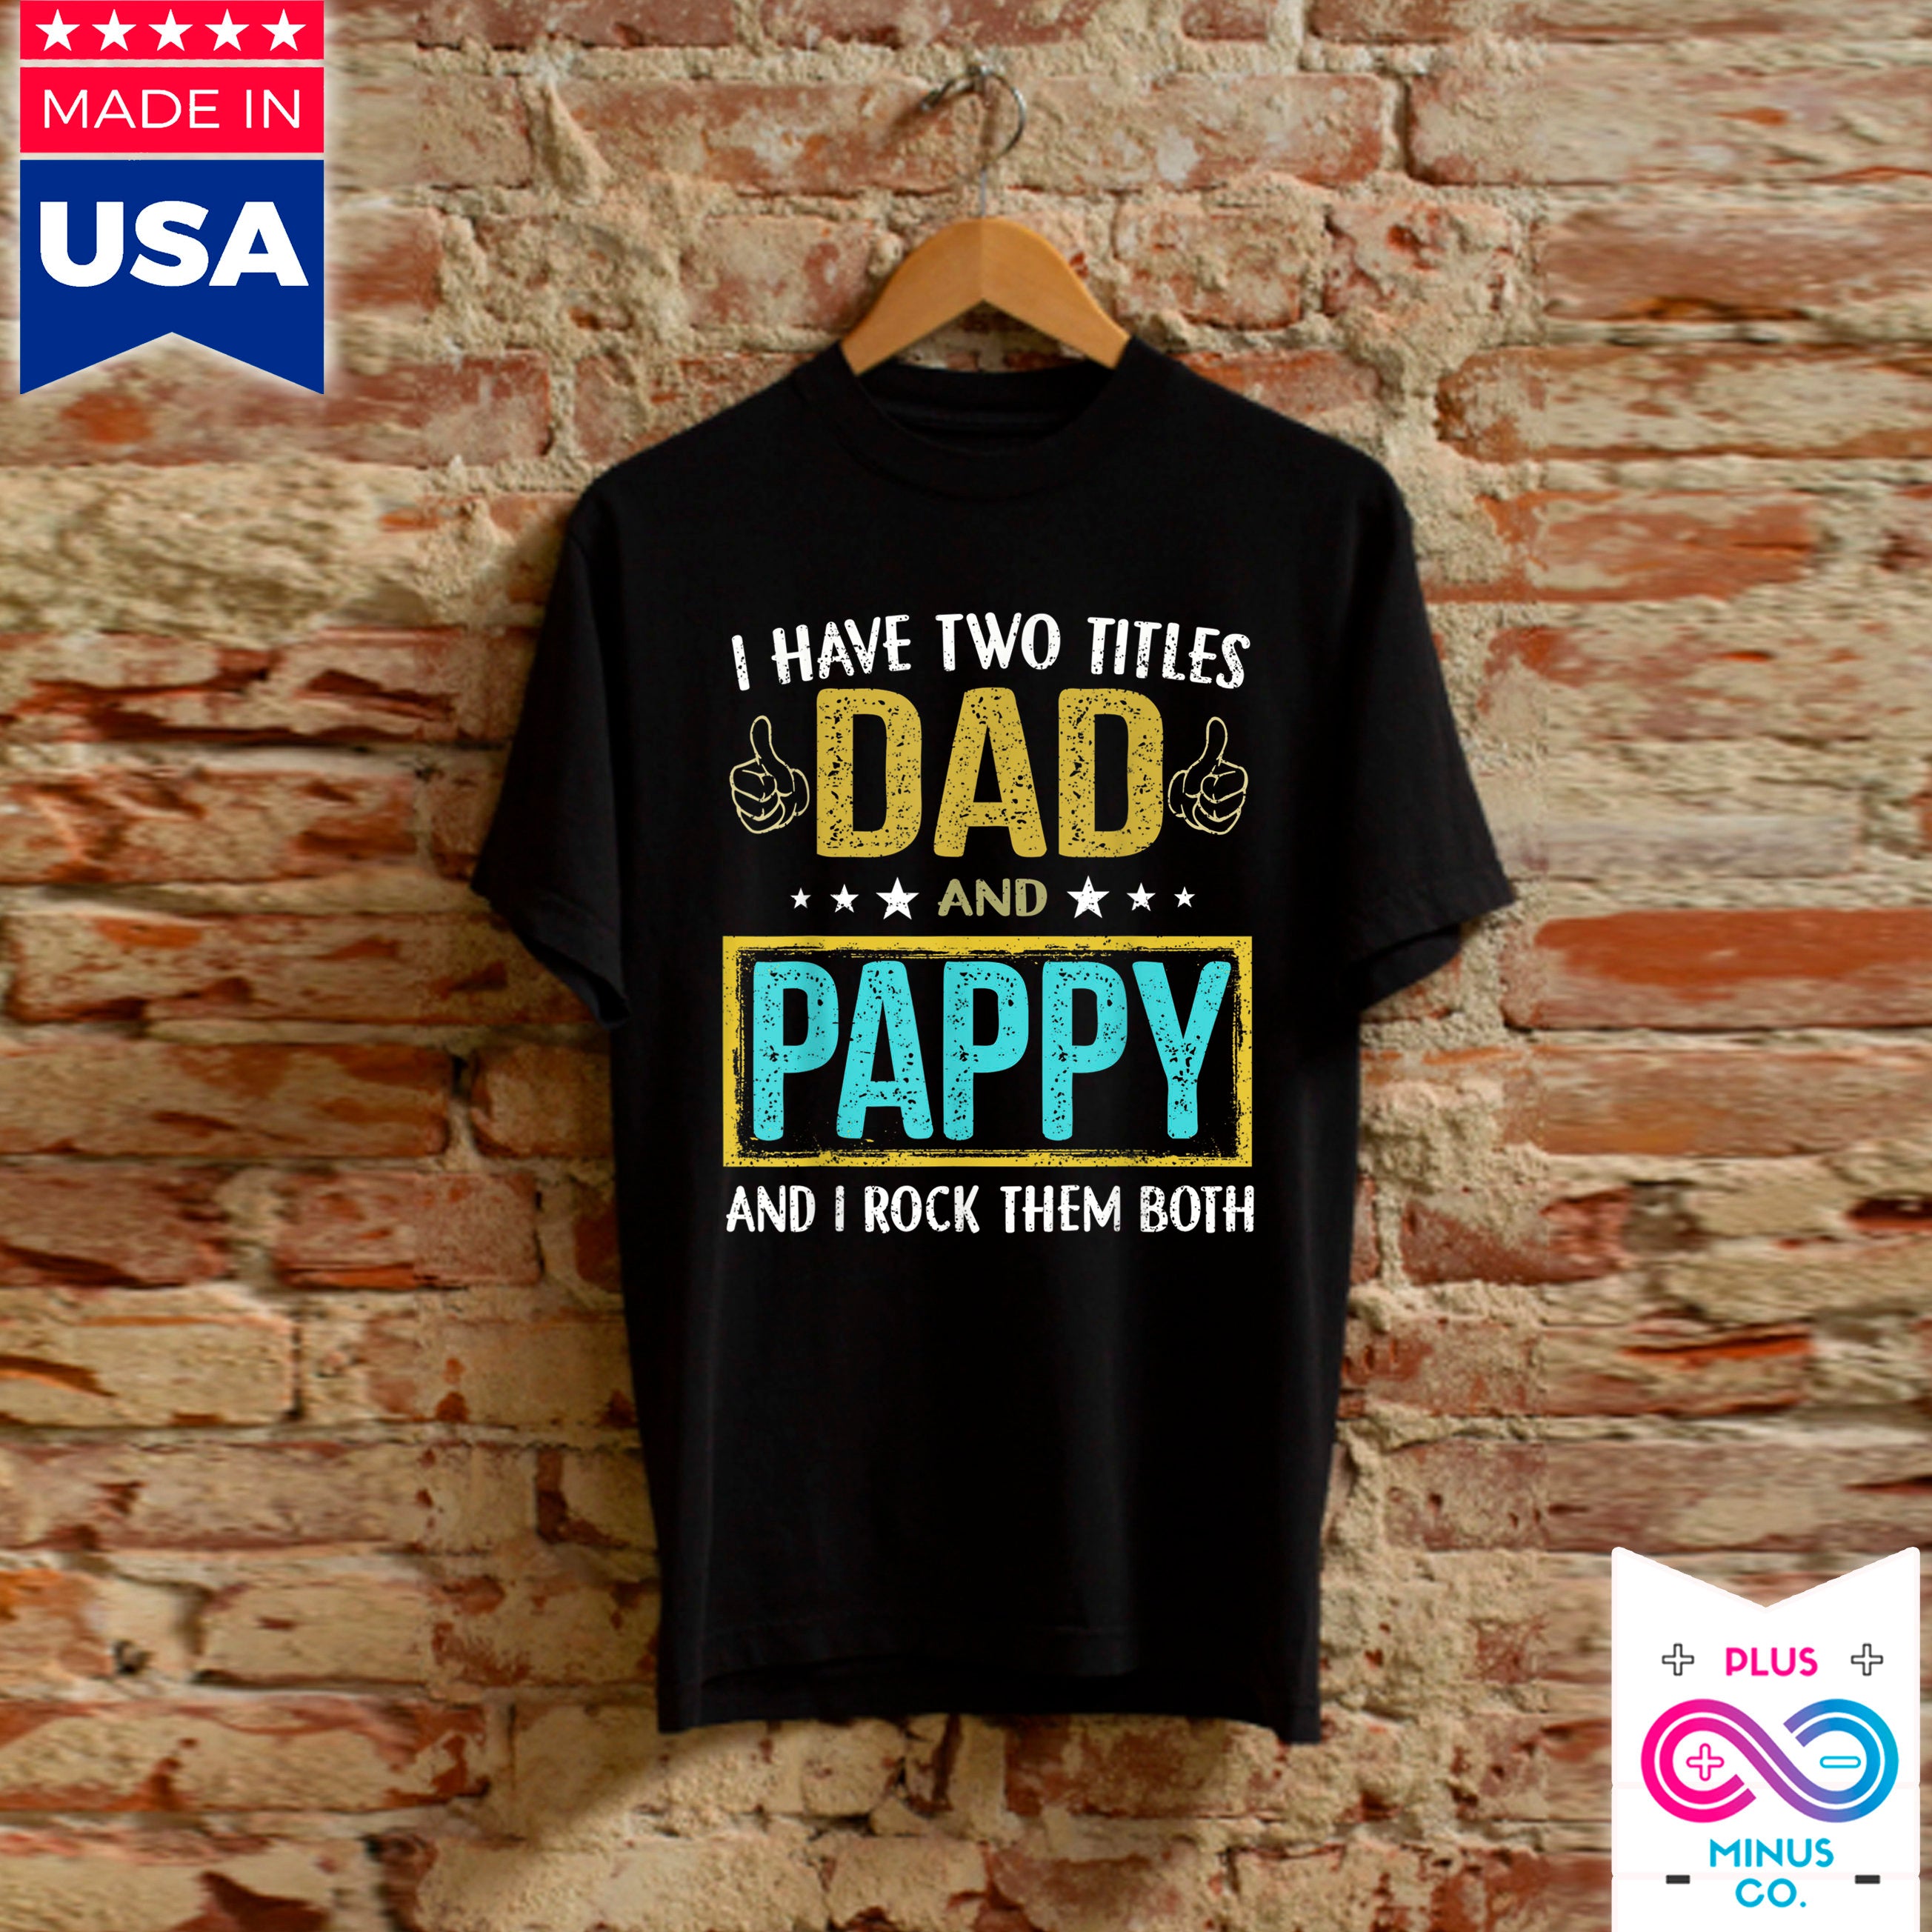 Miesten Minulla on kaksi titteliä, isä ja pappy - lahjoja isälle - T-paidat, lahjat tyttäreltä isälle, isänpäivälahjat, lahjat pojalta isälle - plusminusco.com